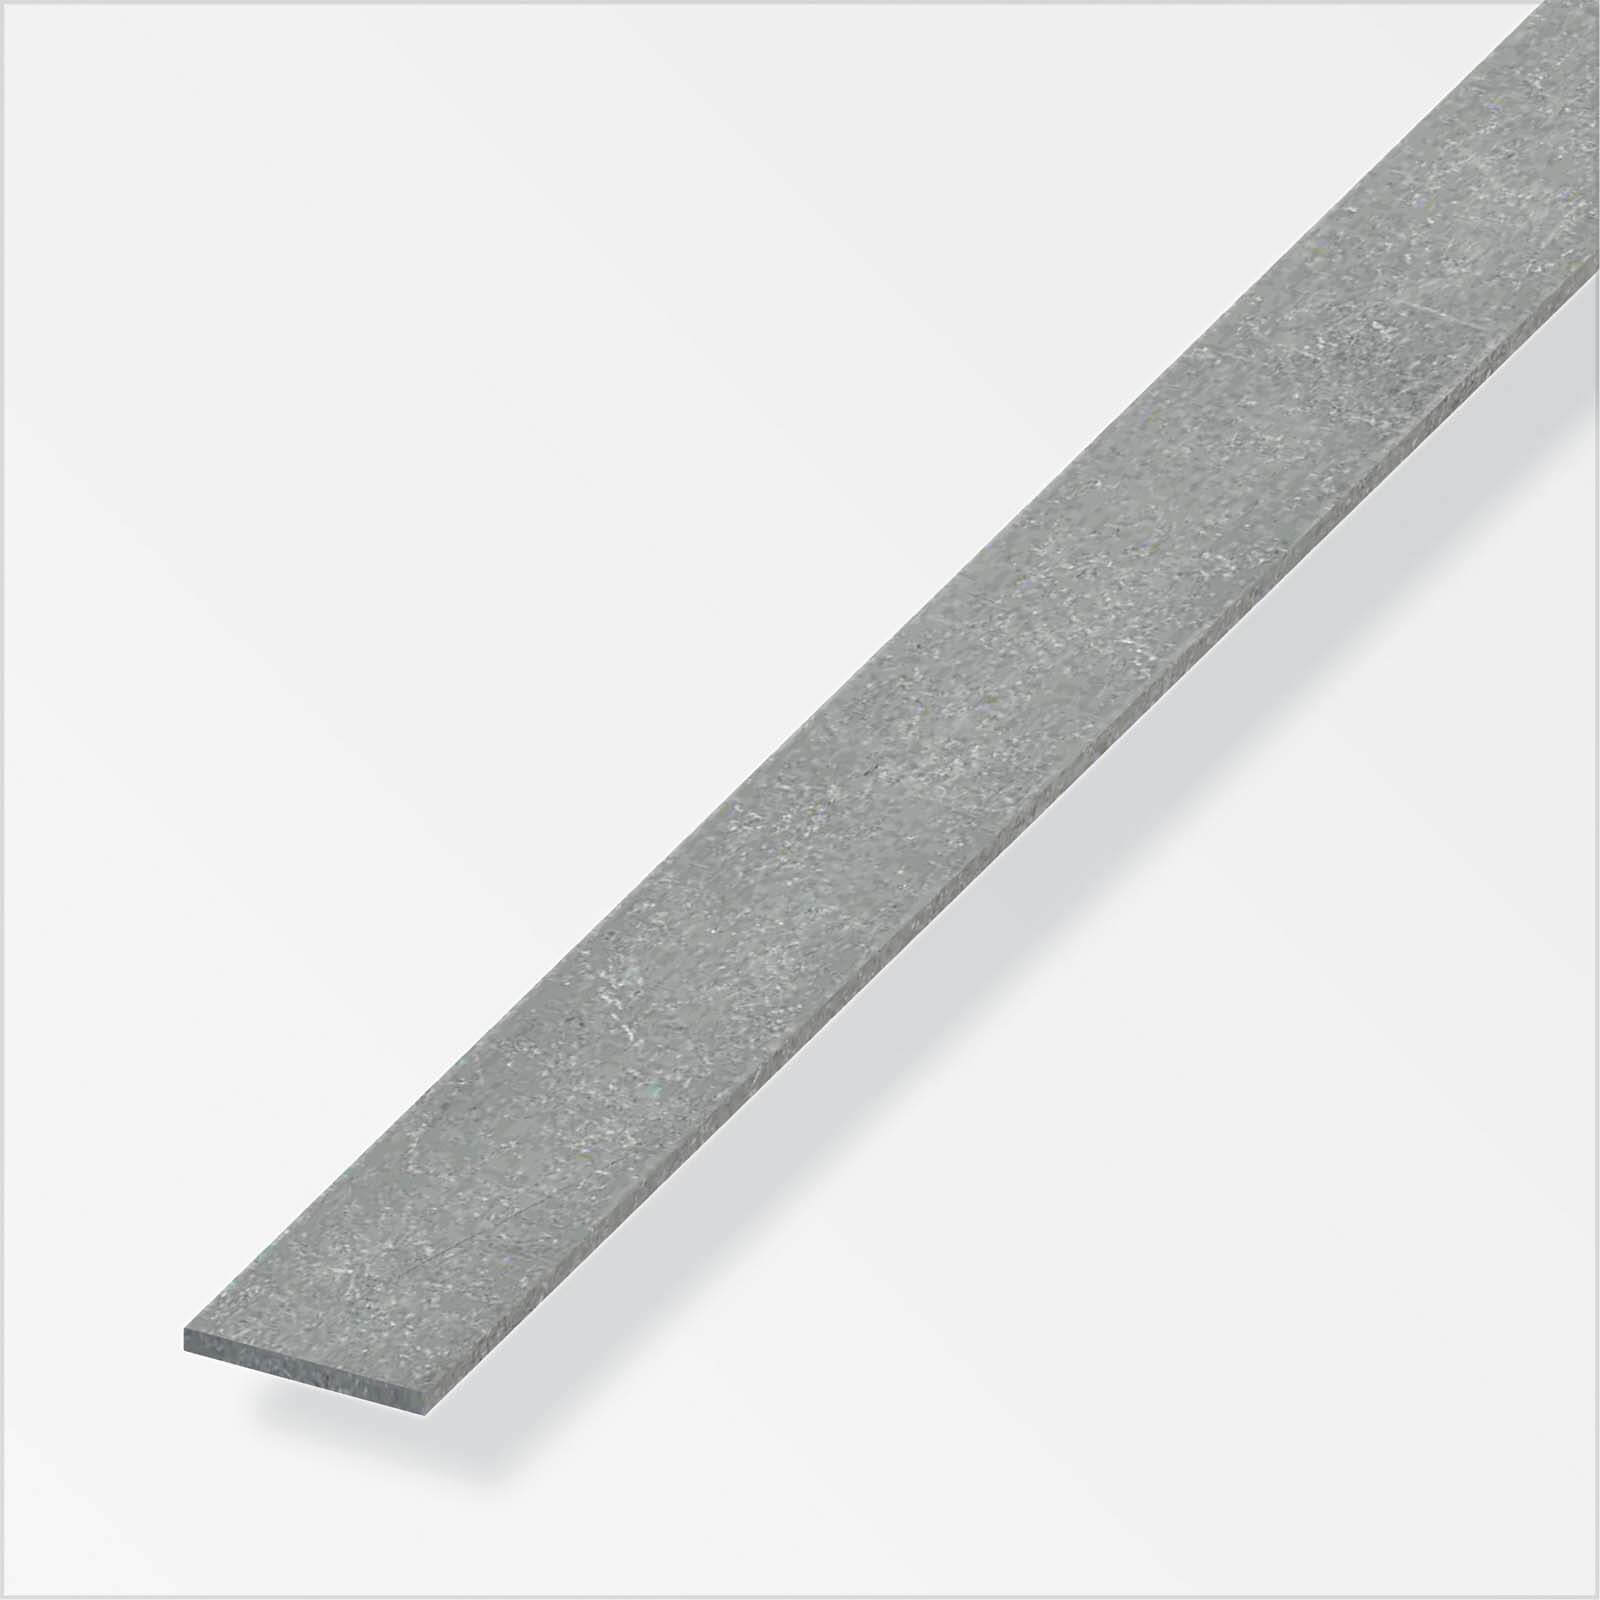 Drawn Steel Flat Bar Profile - 1m x 20mm